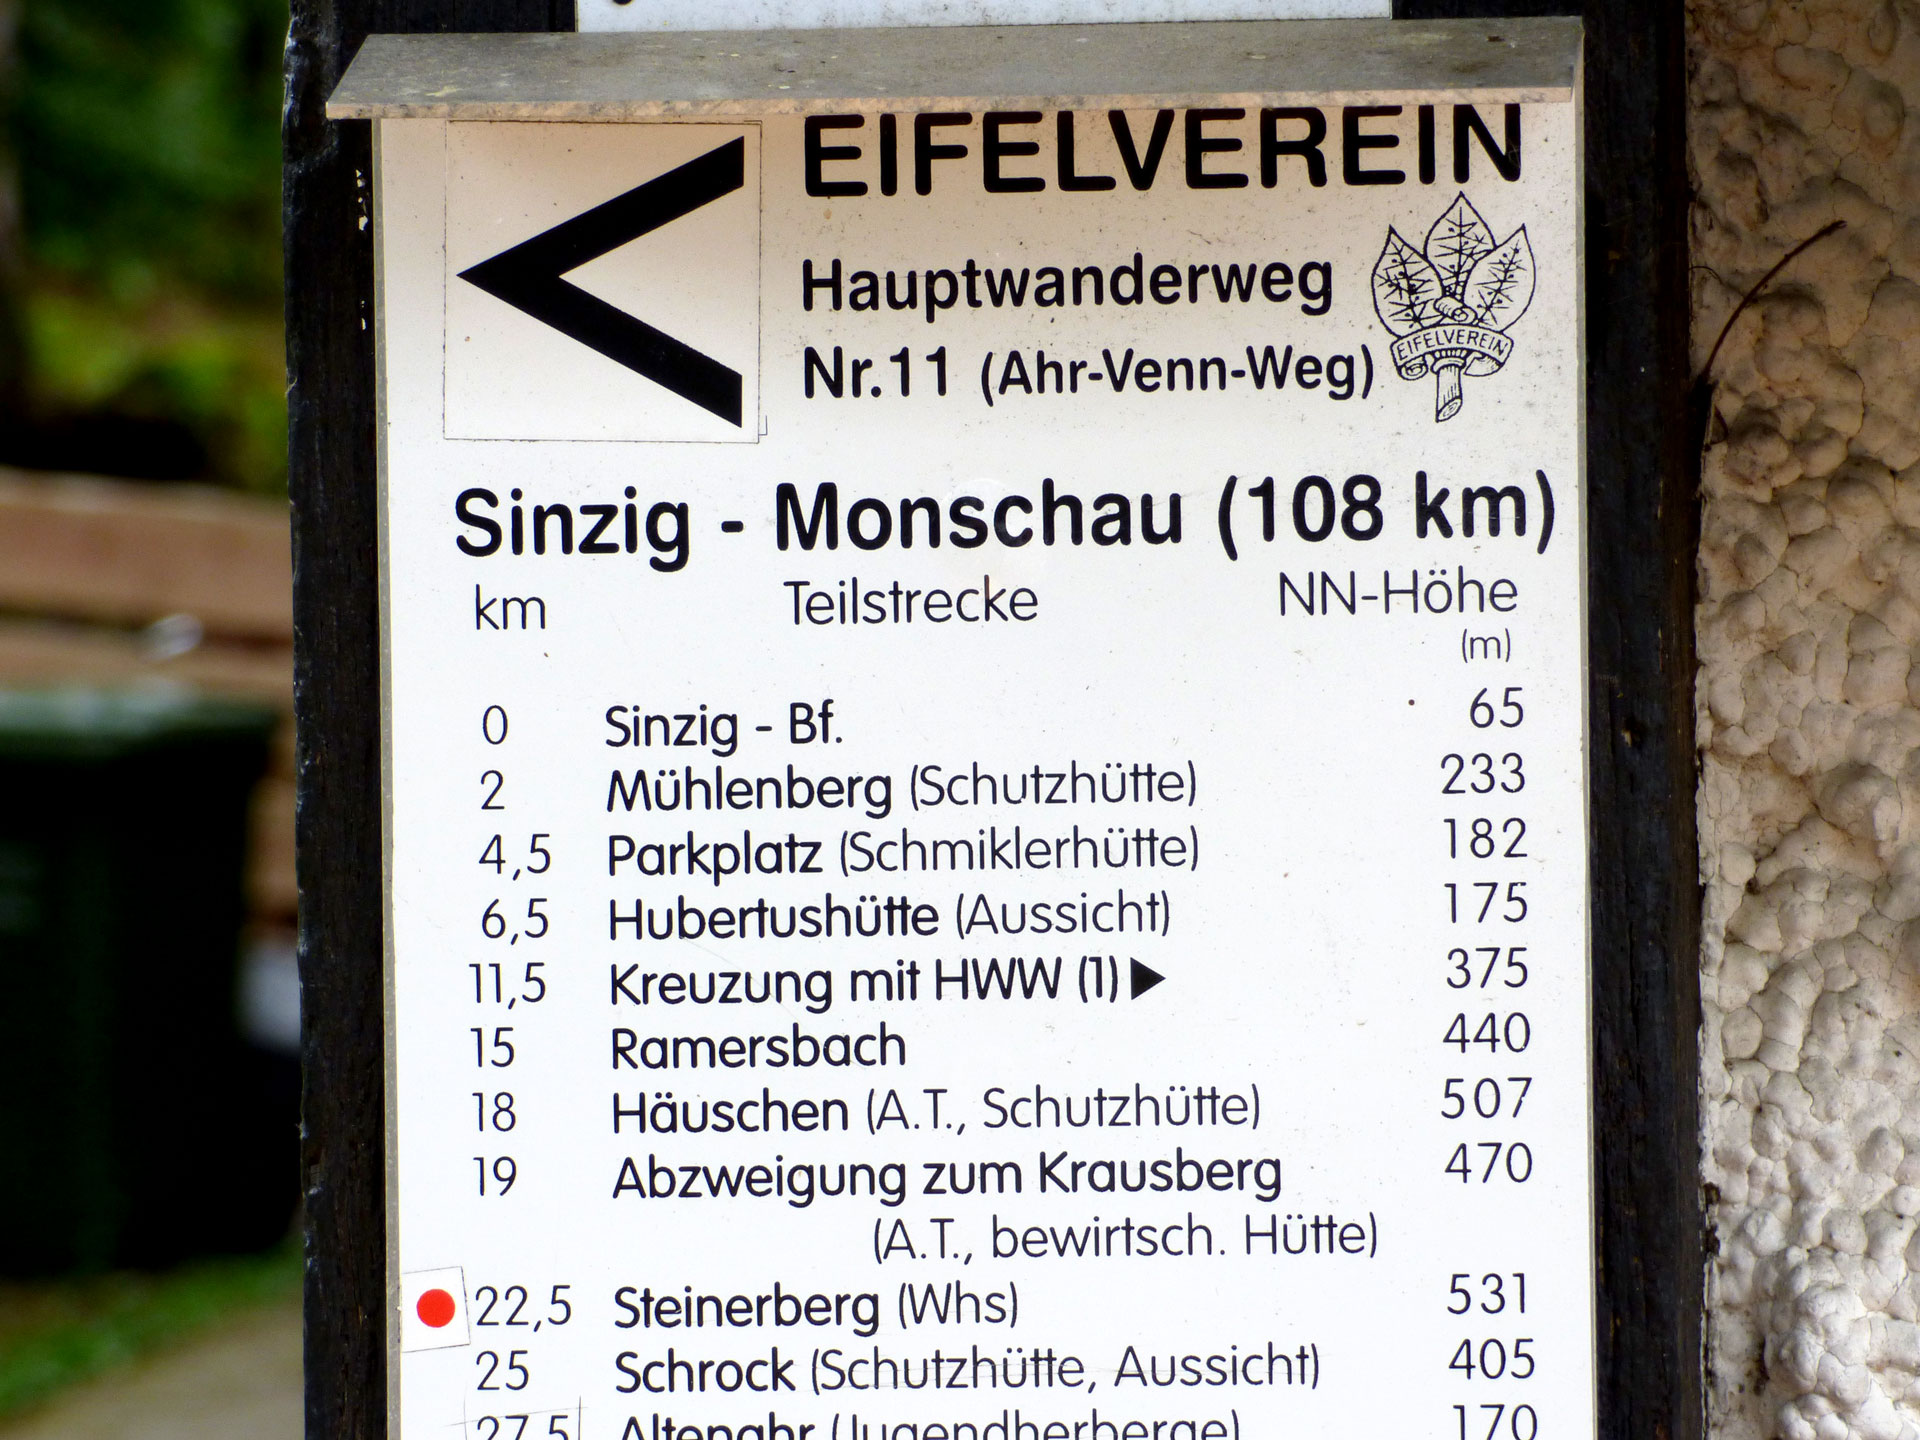 Die Hauptwanderwege des Eifelvereins, die Autobahnen für Wanderer in der Eifel 